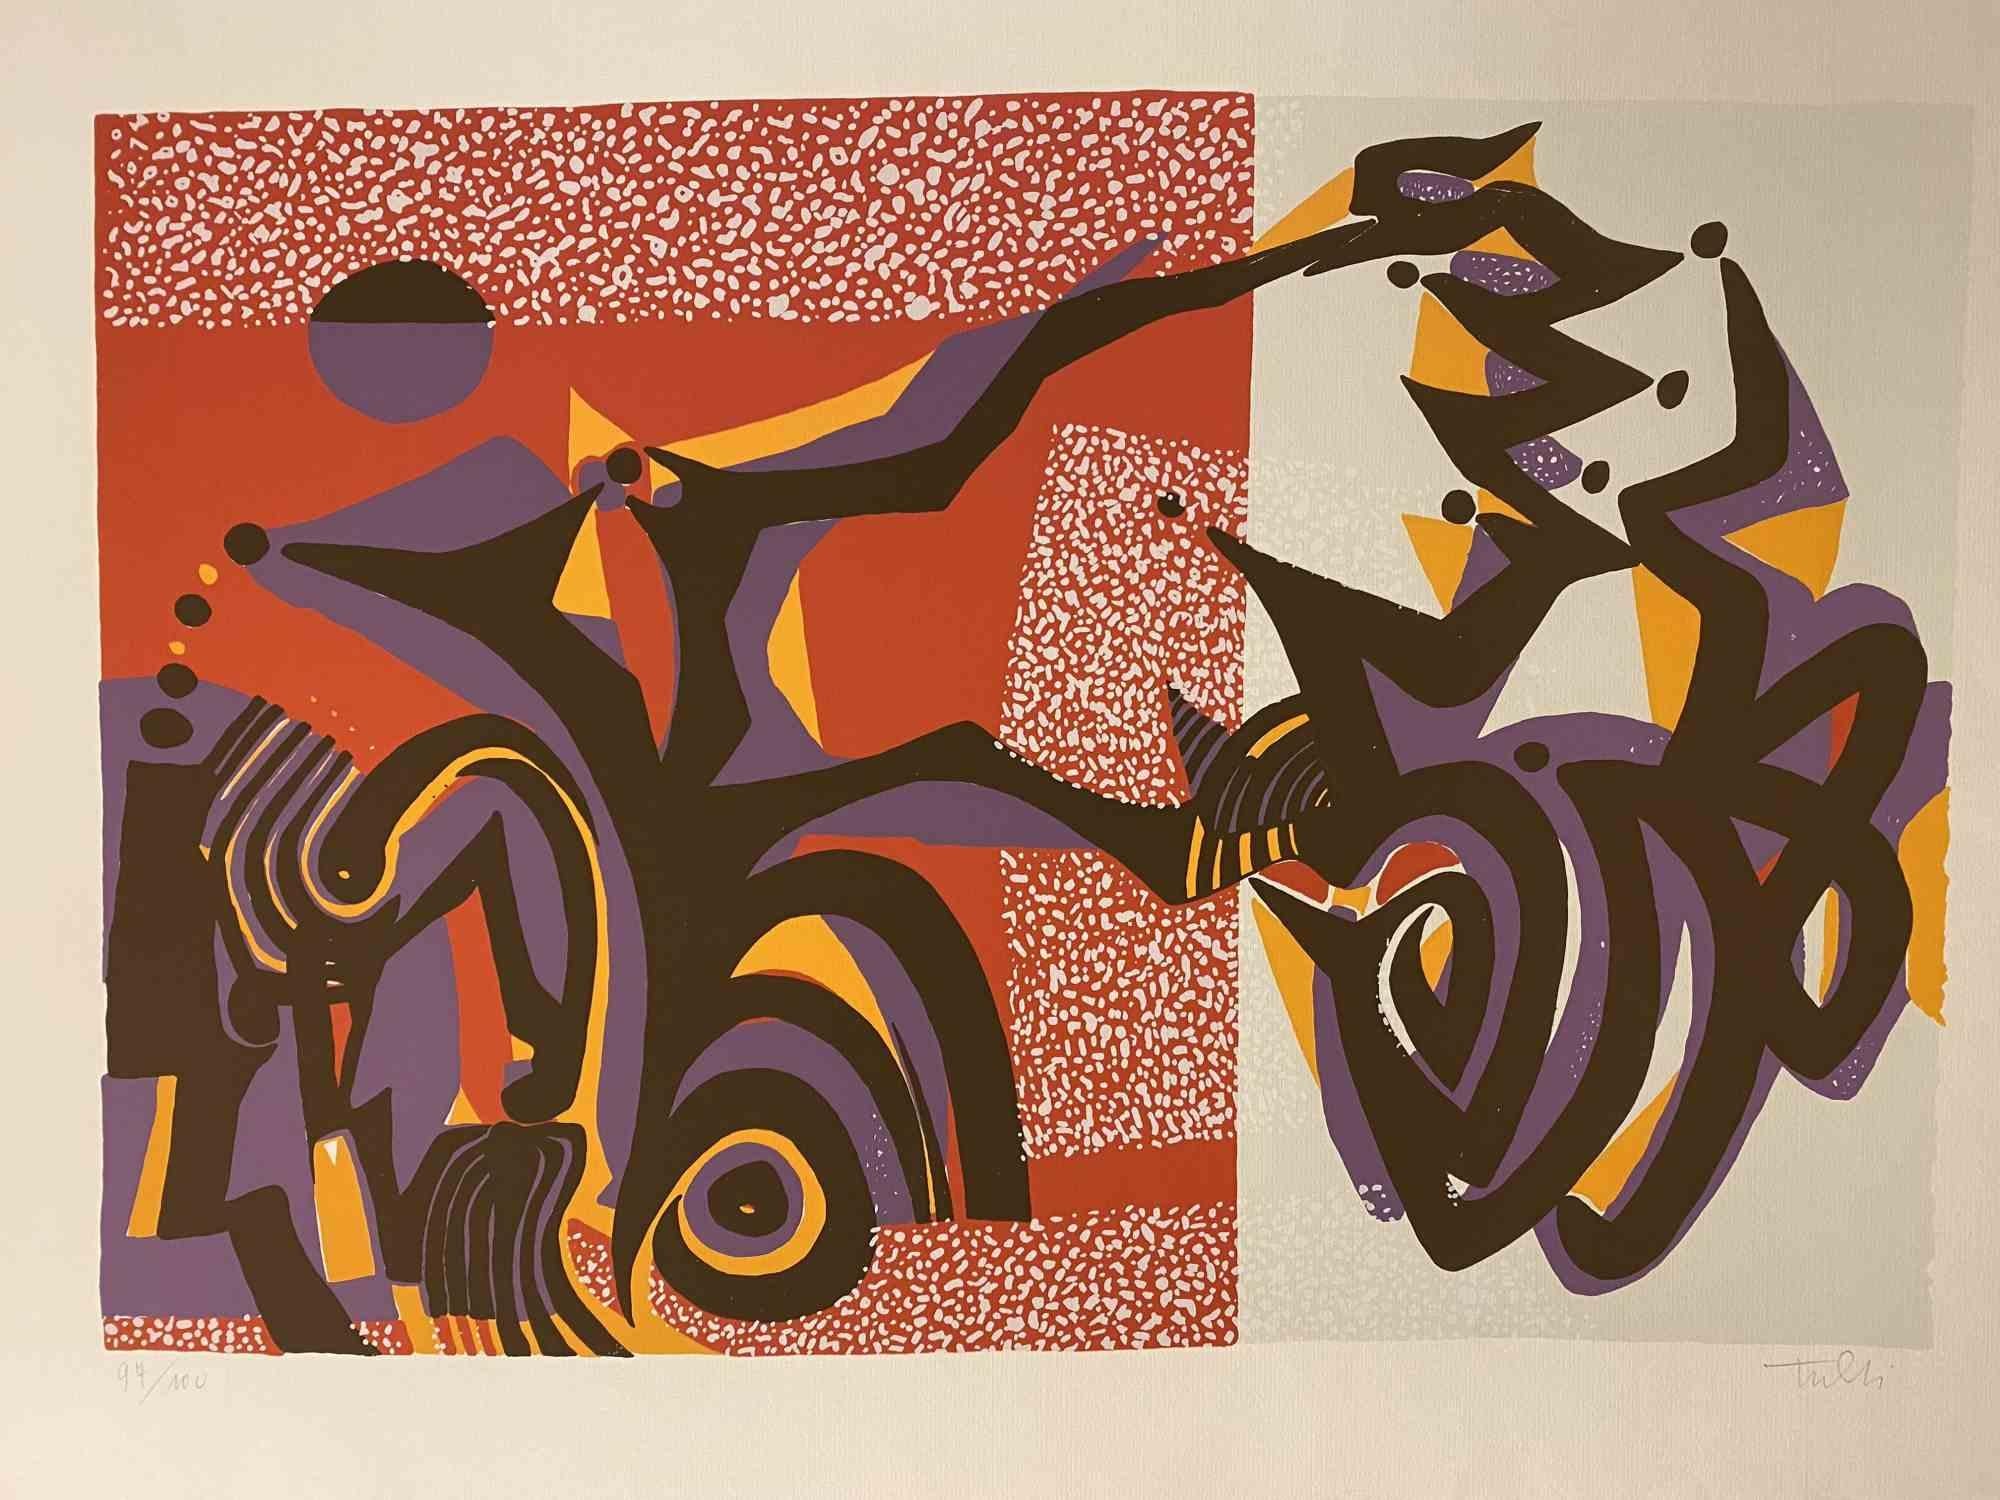 Composition carnavalesque est une sérigraphie colorée sur papier, réalisée dans les années 1970 par l'artiste italien Wladimiro Tulli.

Signé à la main en bas à droite.

Numéroté, édition de 97/100.

Une belle œuvre d'art représentant une